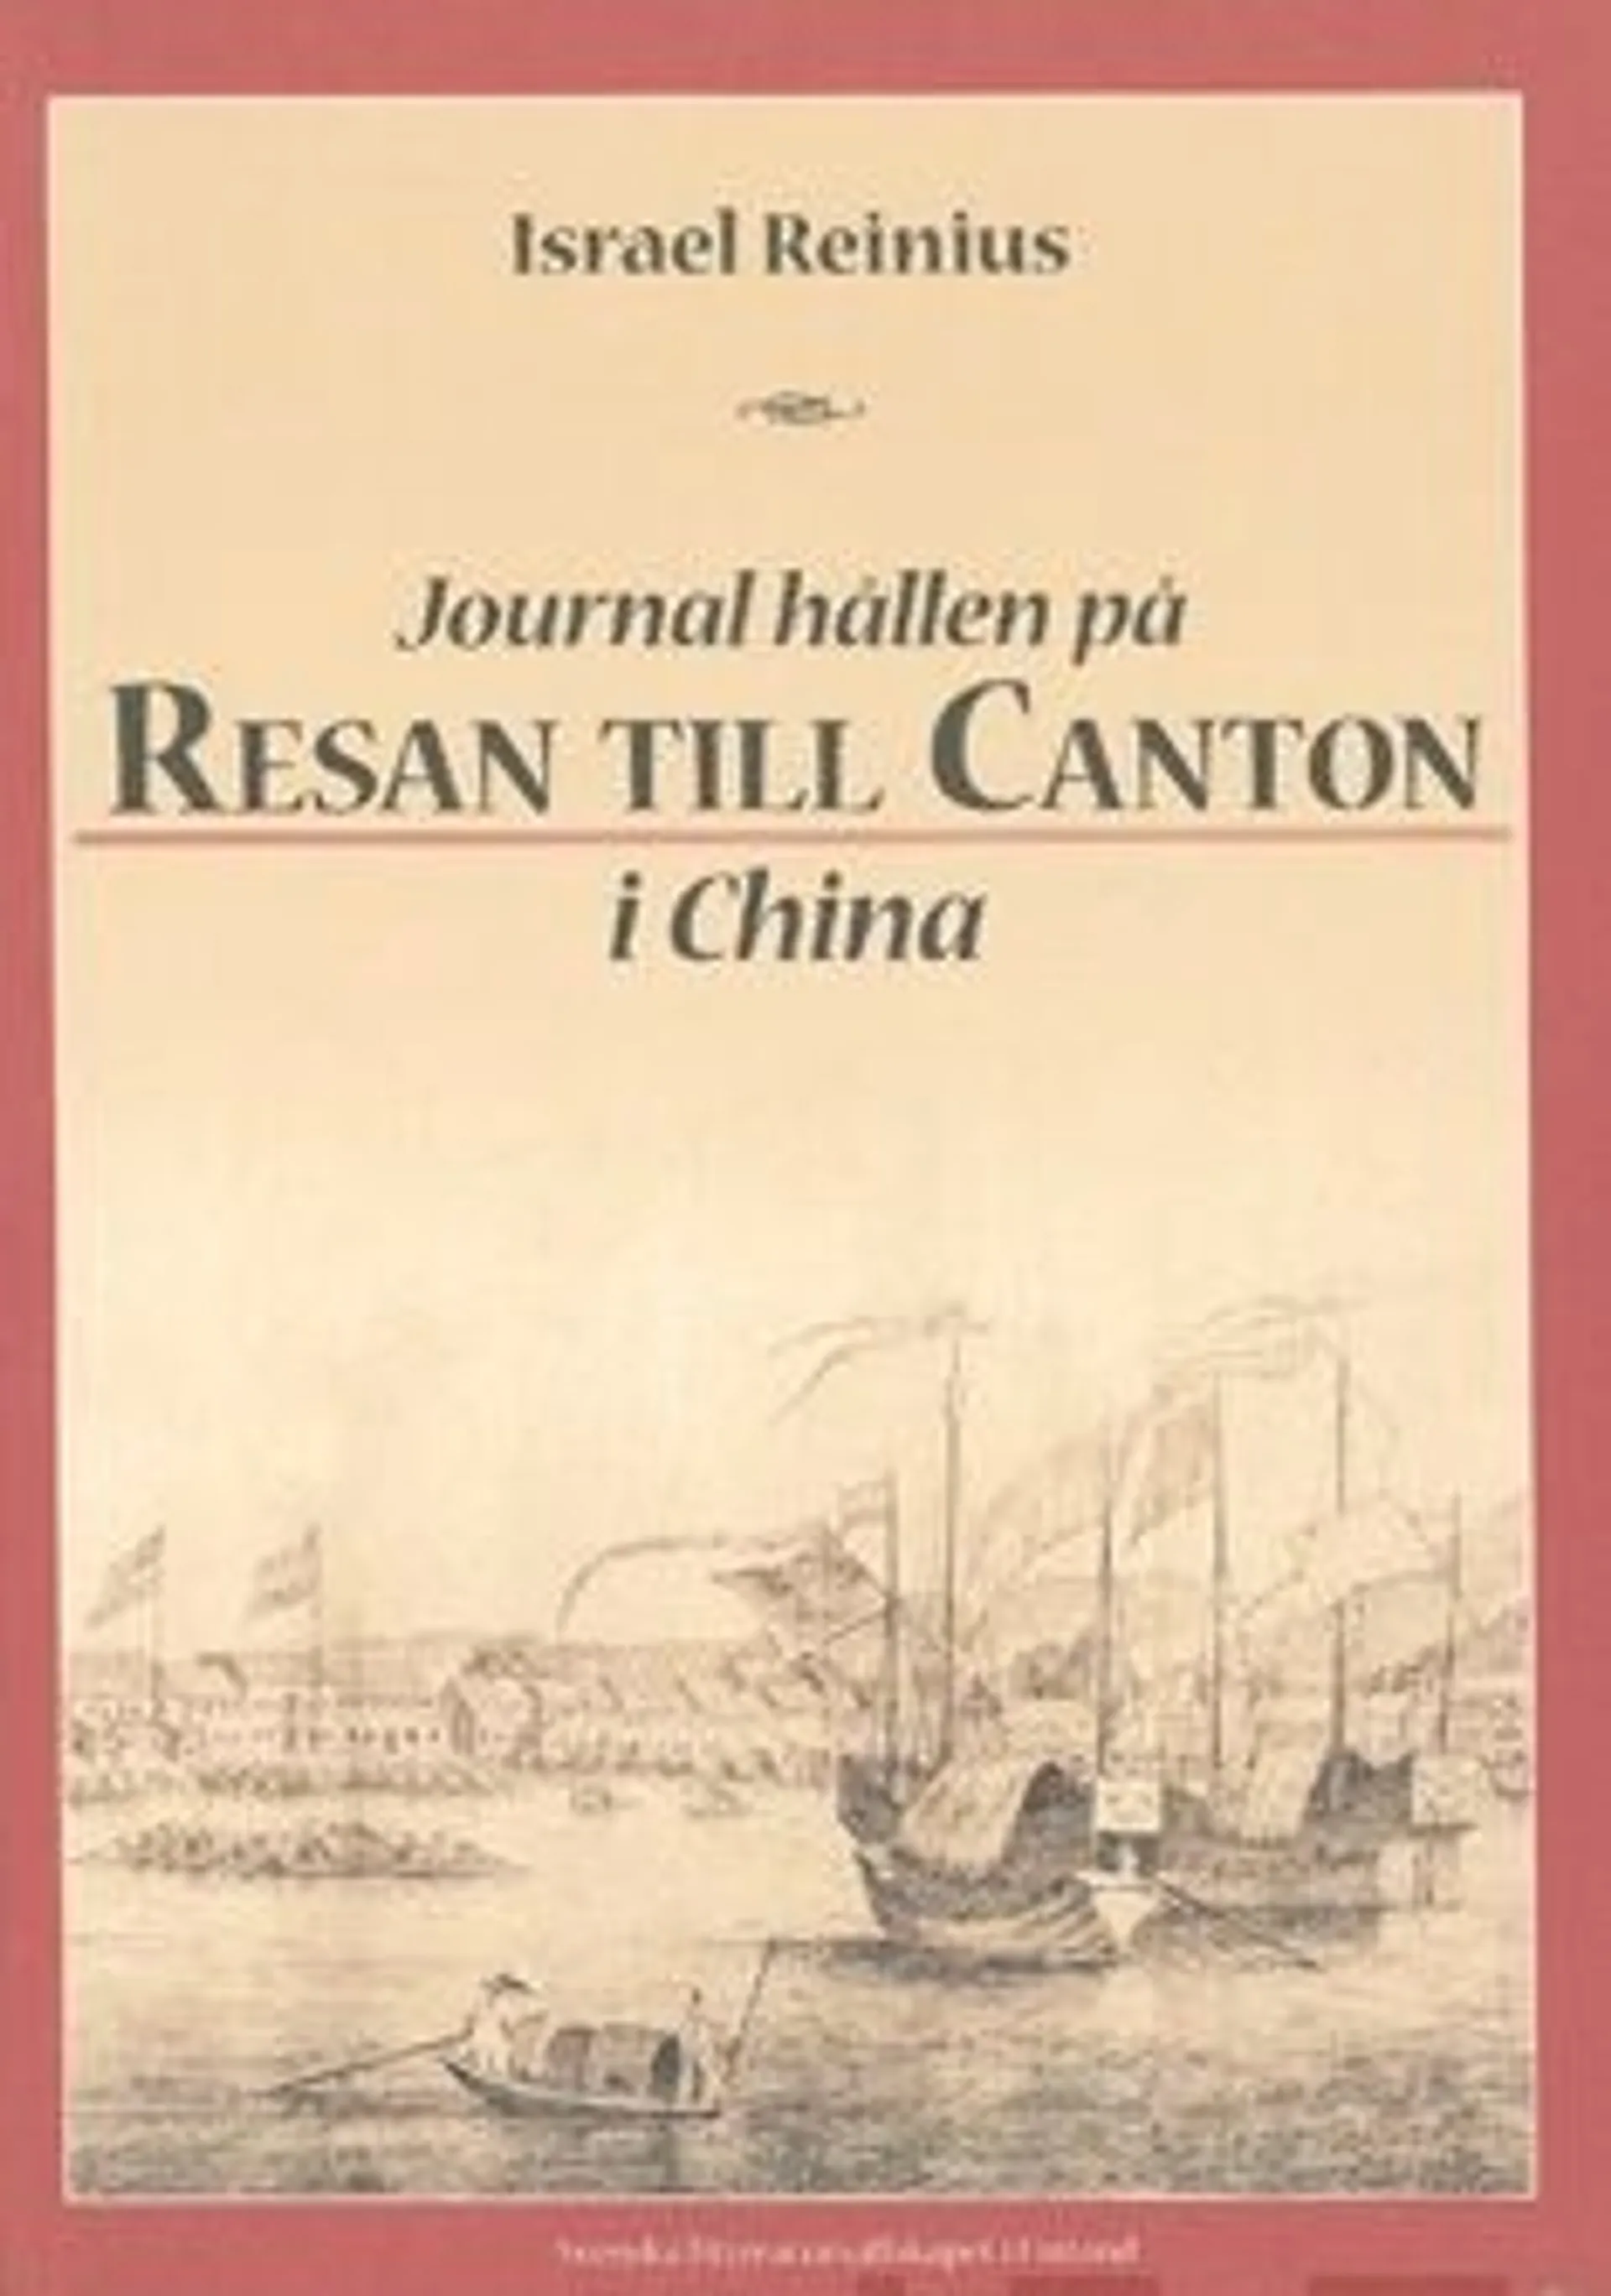 Reinius, Journal hållen på resan till Canton i China